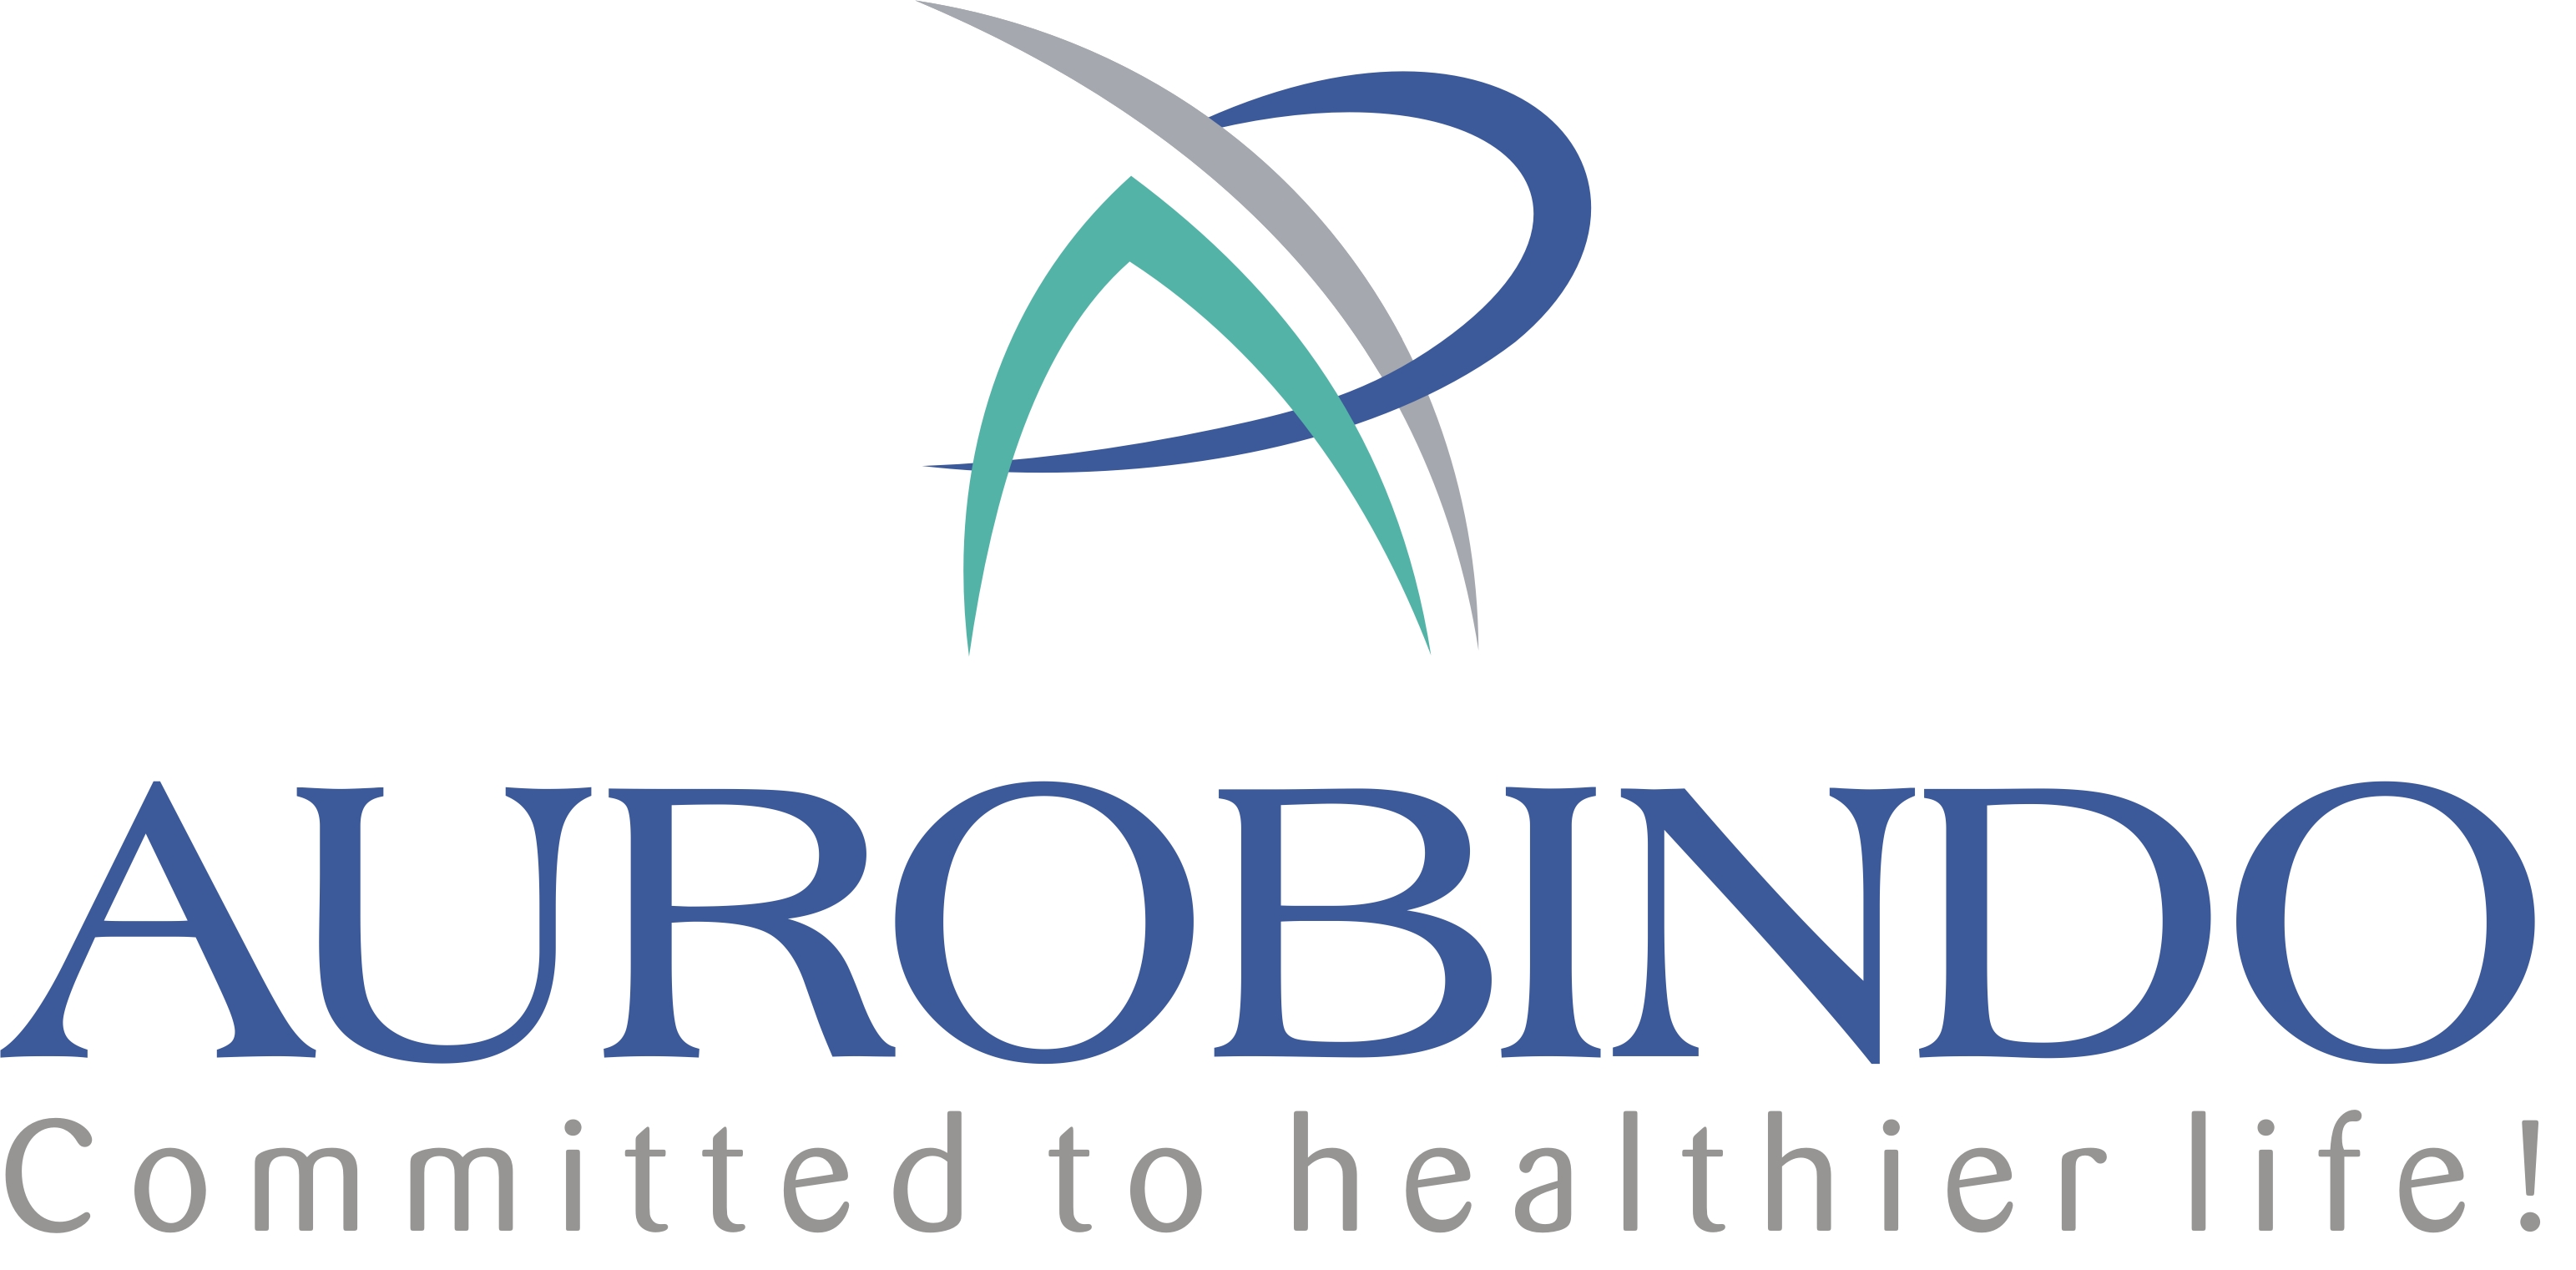 Aurobindo Pharma Ltd